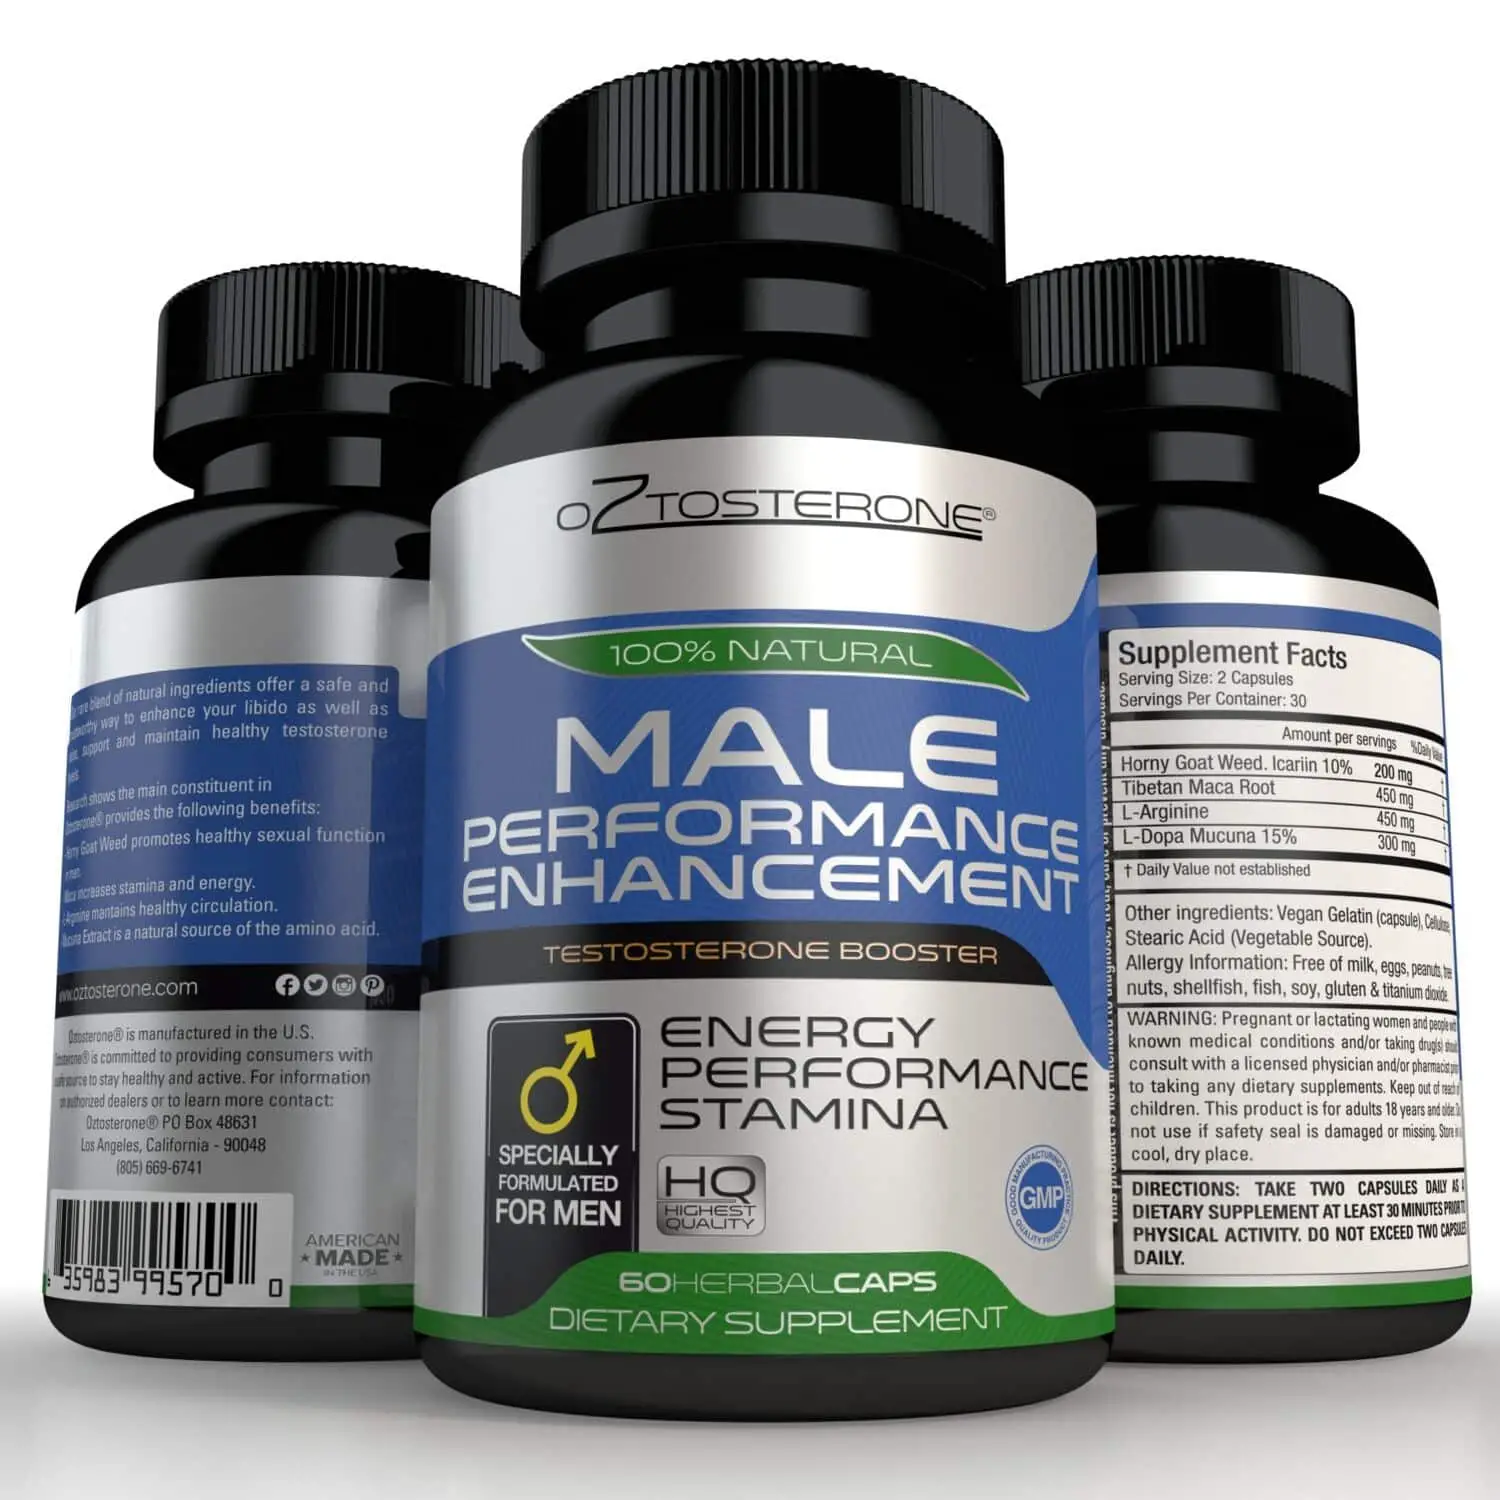 Best supplements for men over 50